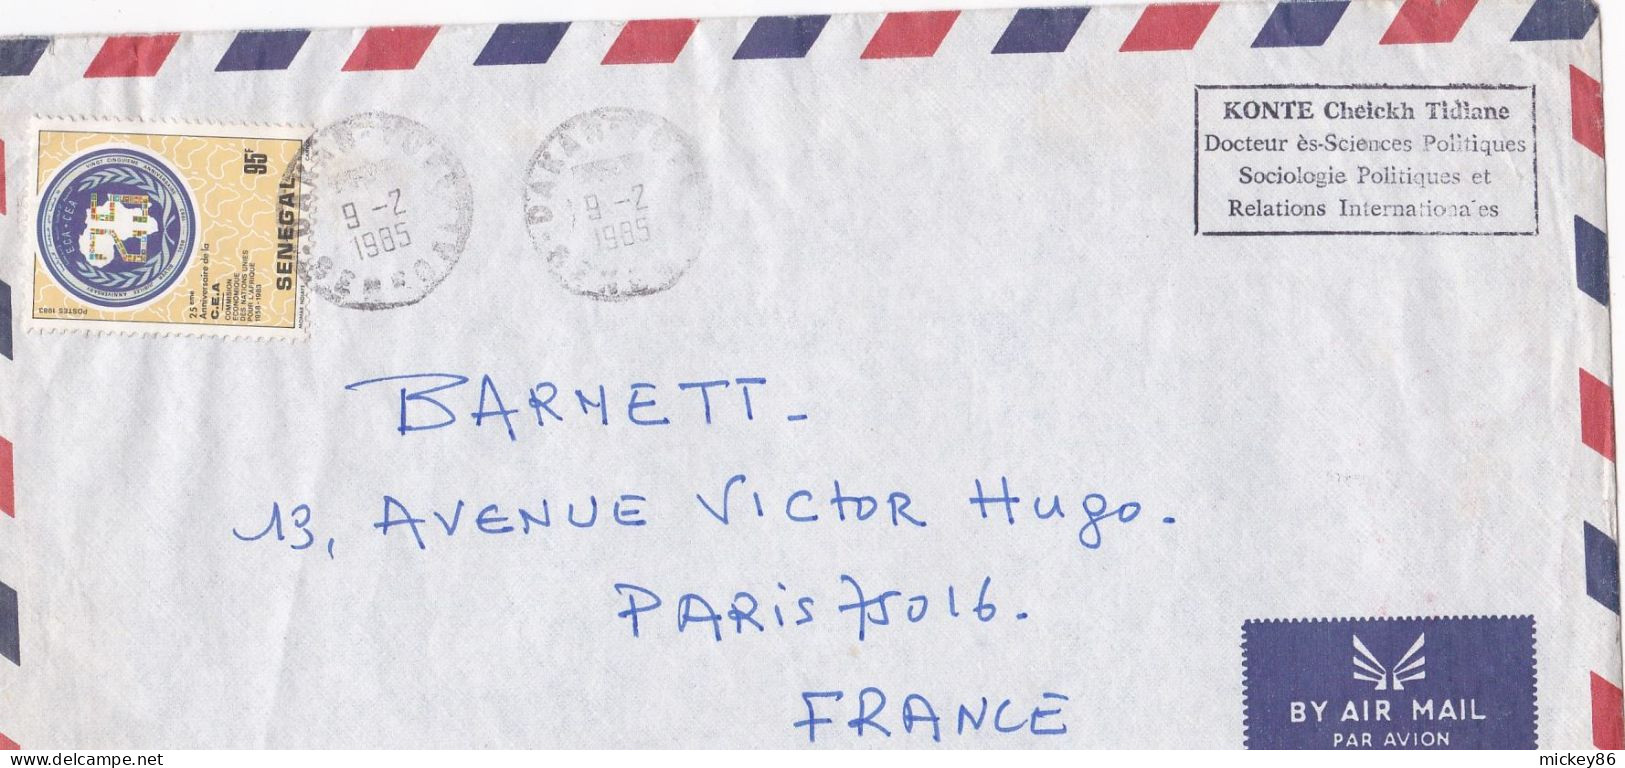 Sénégal -1985--Lettre De DAKAR YOFF  Pour PARIS (France) .timbre C.E.A Seul Sur Lettre...cachets...personnalisée Konte - Senegal (1960-...)